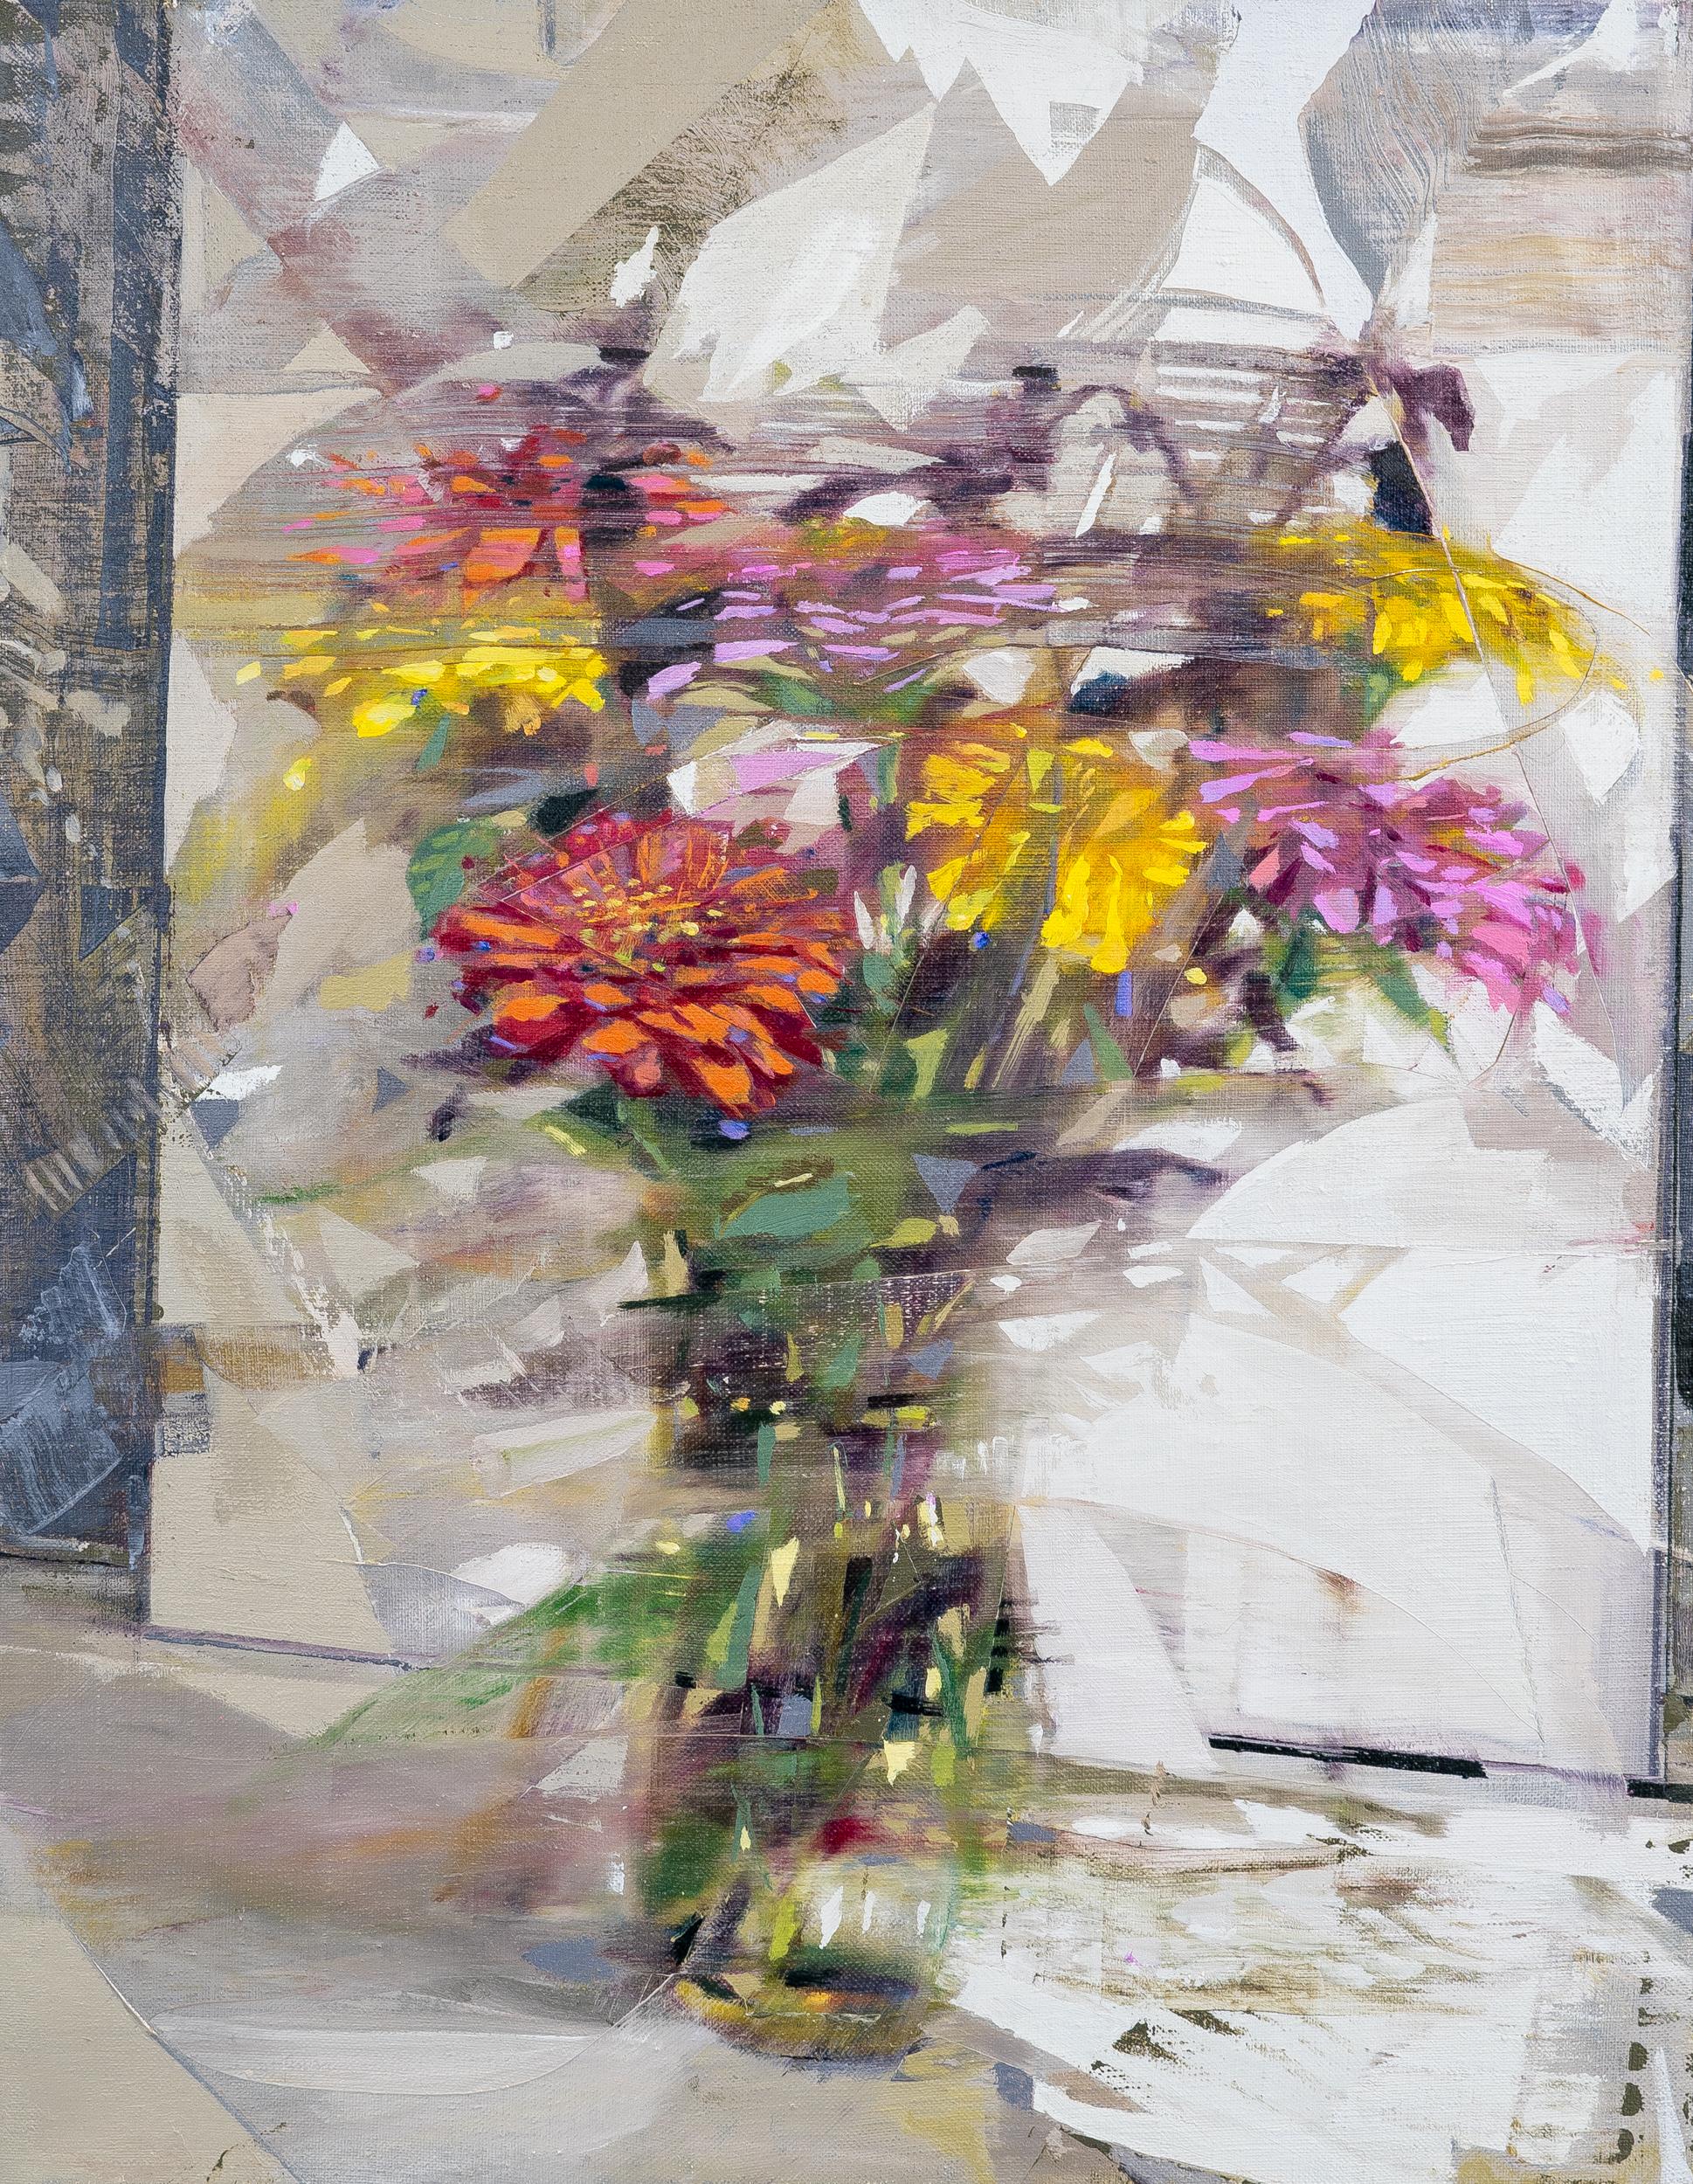 DWELL – Expressionistisches Ölgemälde auf Leinwand mit Blumen in einer Vase auf einem Tisch